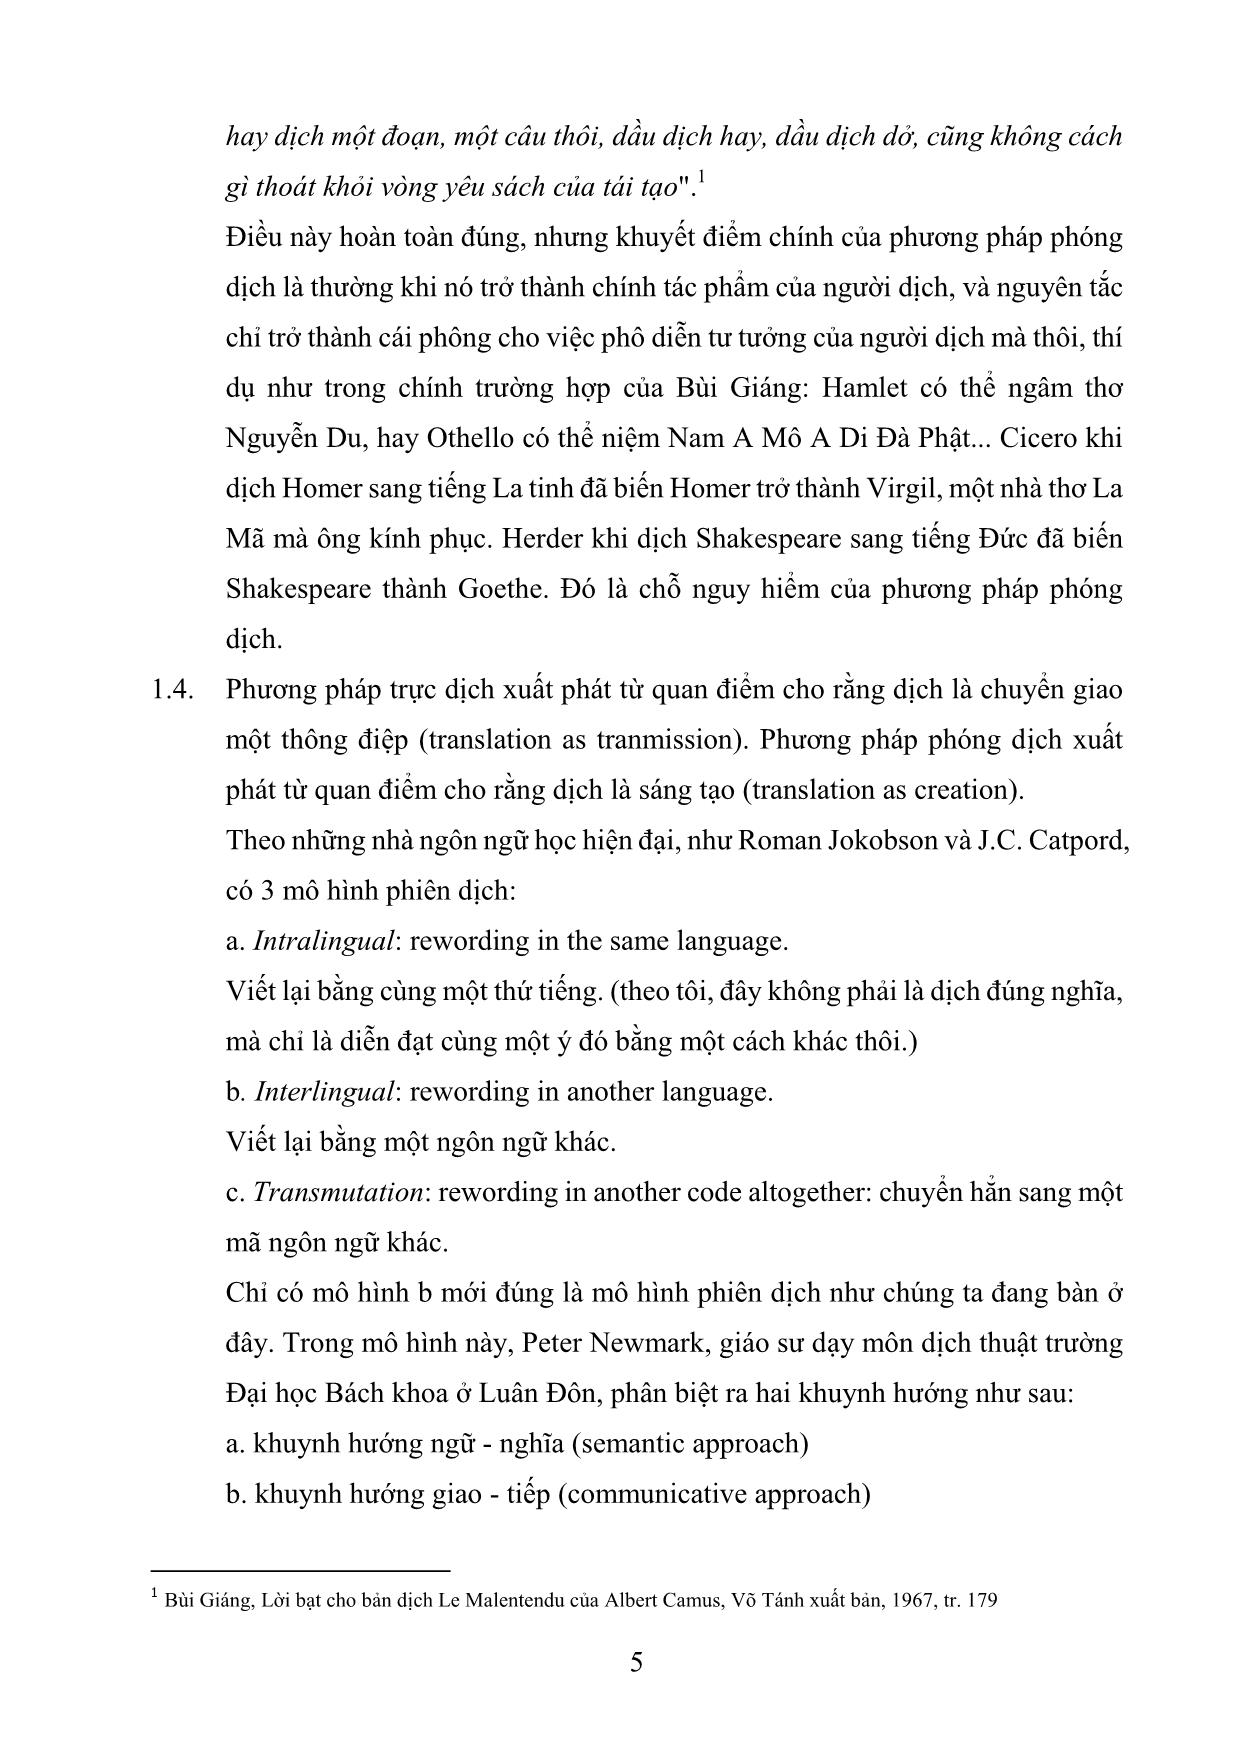 Giáo trình Phương pháp luyện dịch (Phần 1) trang 5